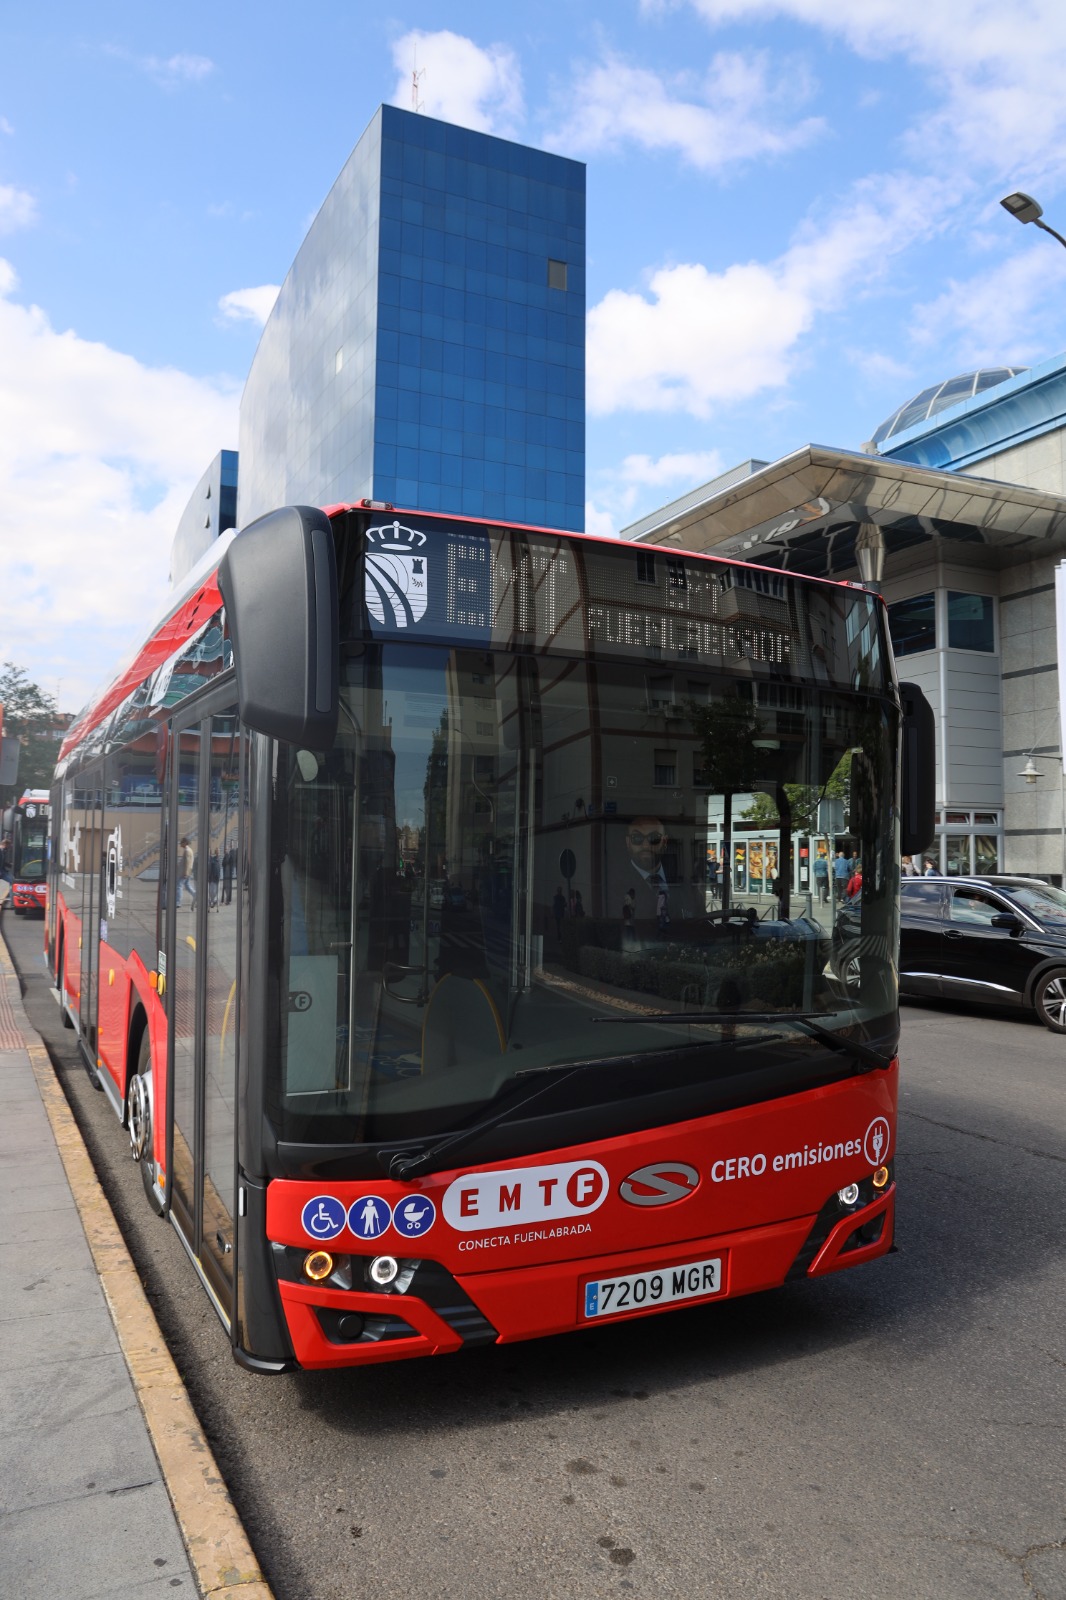 FUENLABRADA) Los primeros autobuses eléctricos de la EMTF circulan ya a modo de prueba - alcabodelacalle